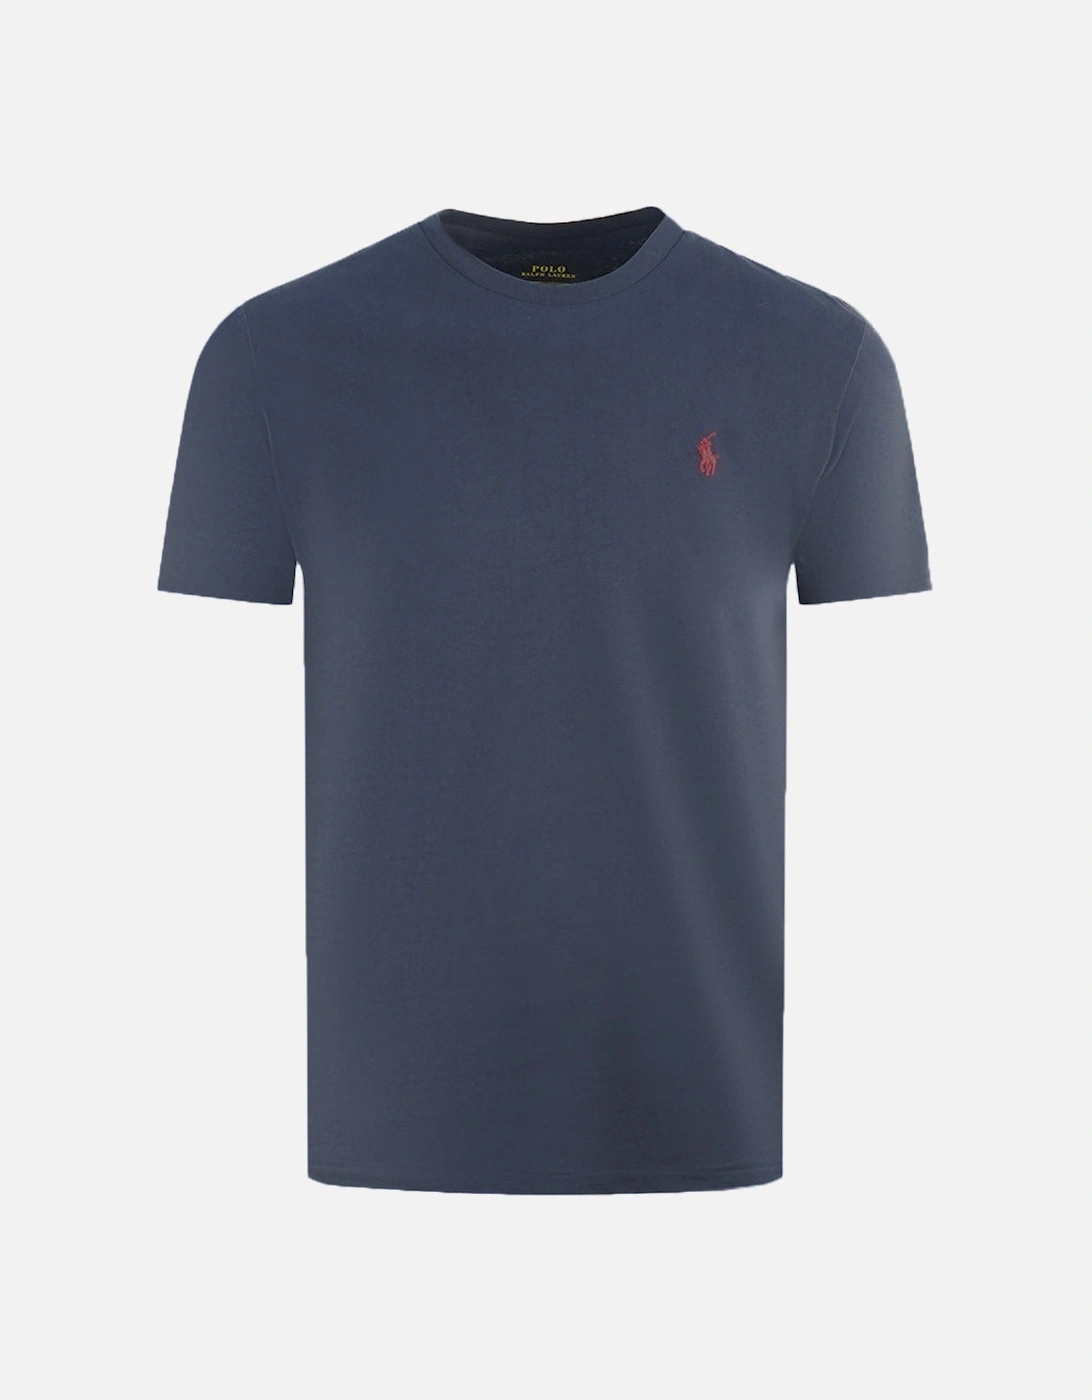 Navy Blue T-Shirt, 3 of 2